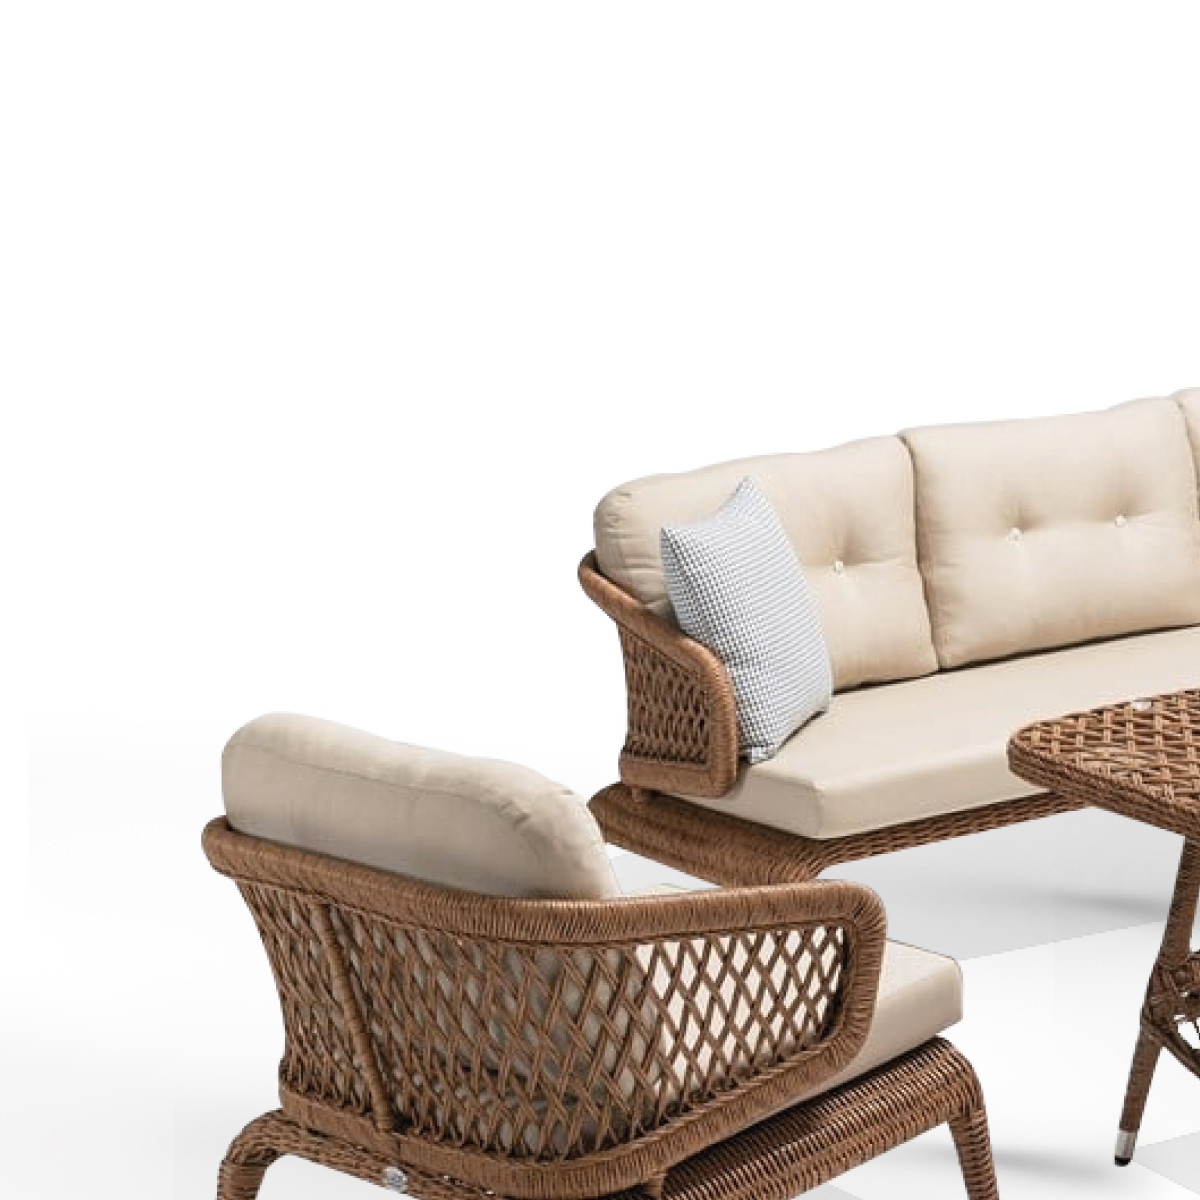 Bahex Zambak Luxury Oturma Grubu 3+1+1 Premium Outdoor Bahçe & Balkon Takımı